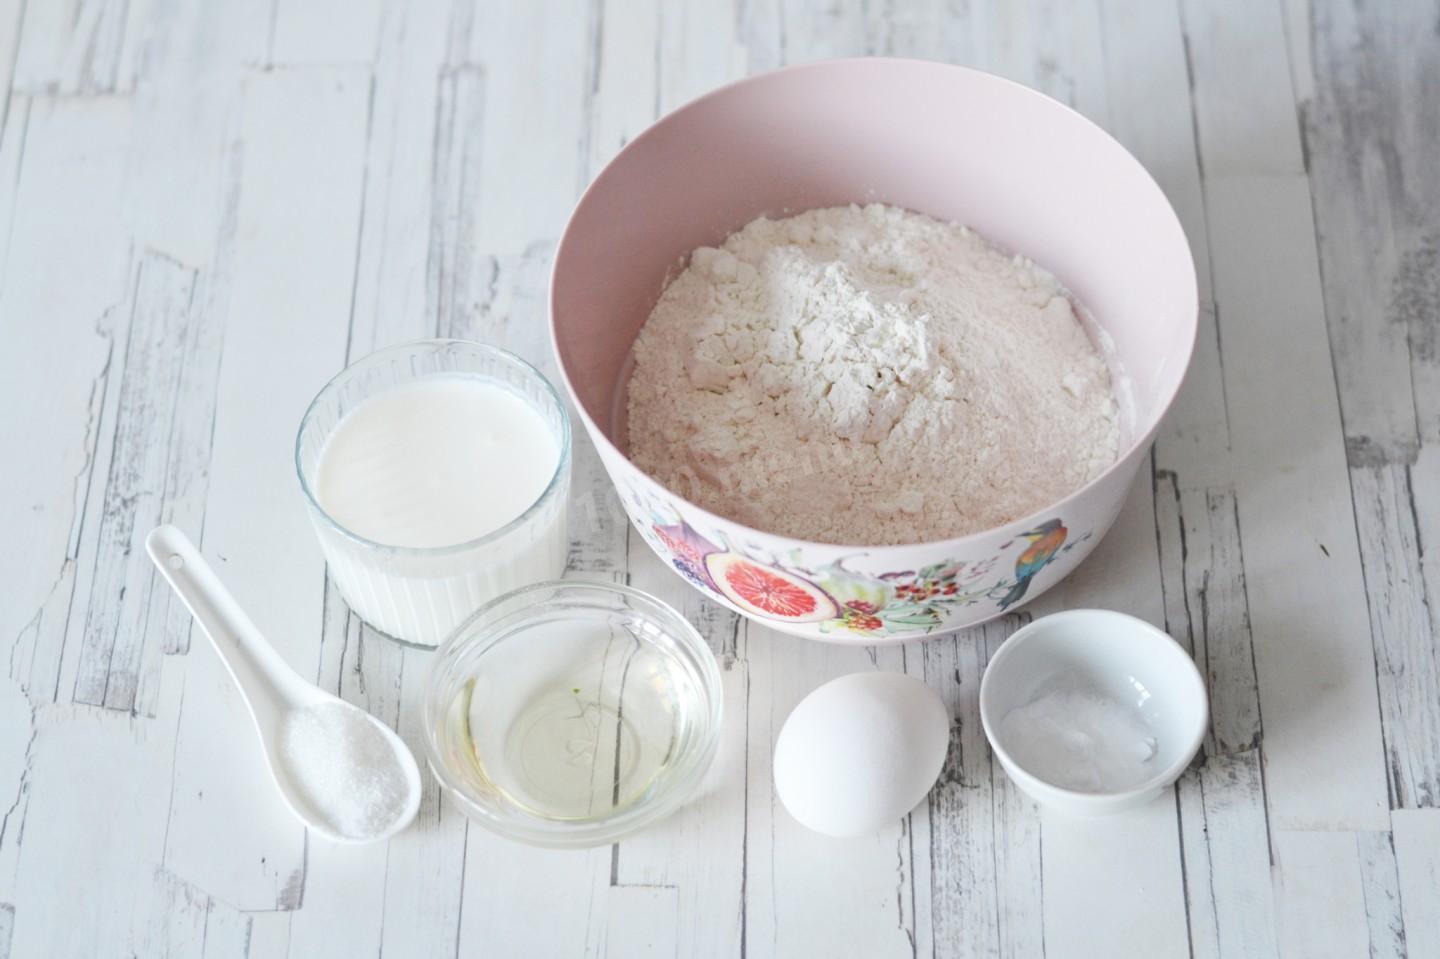 Кефир сахар мука рецепт. Яйцо кефир мука сахар. Соль сахар сода. 1 Яйцо мука кефир масло. Тесто для пельменей на ржаной муке с кефиром.